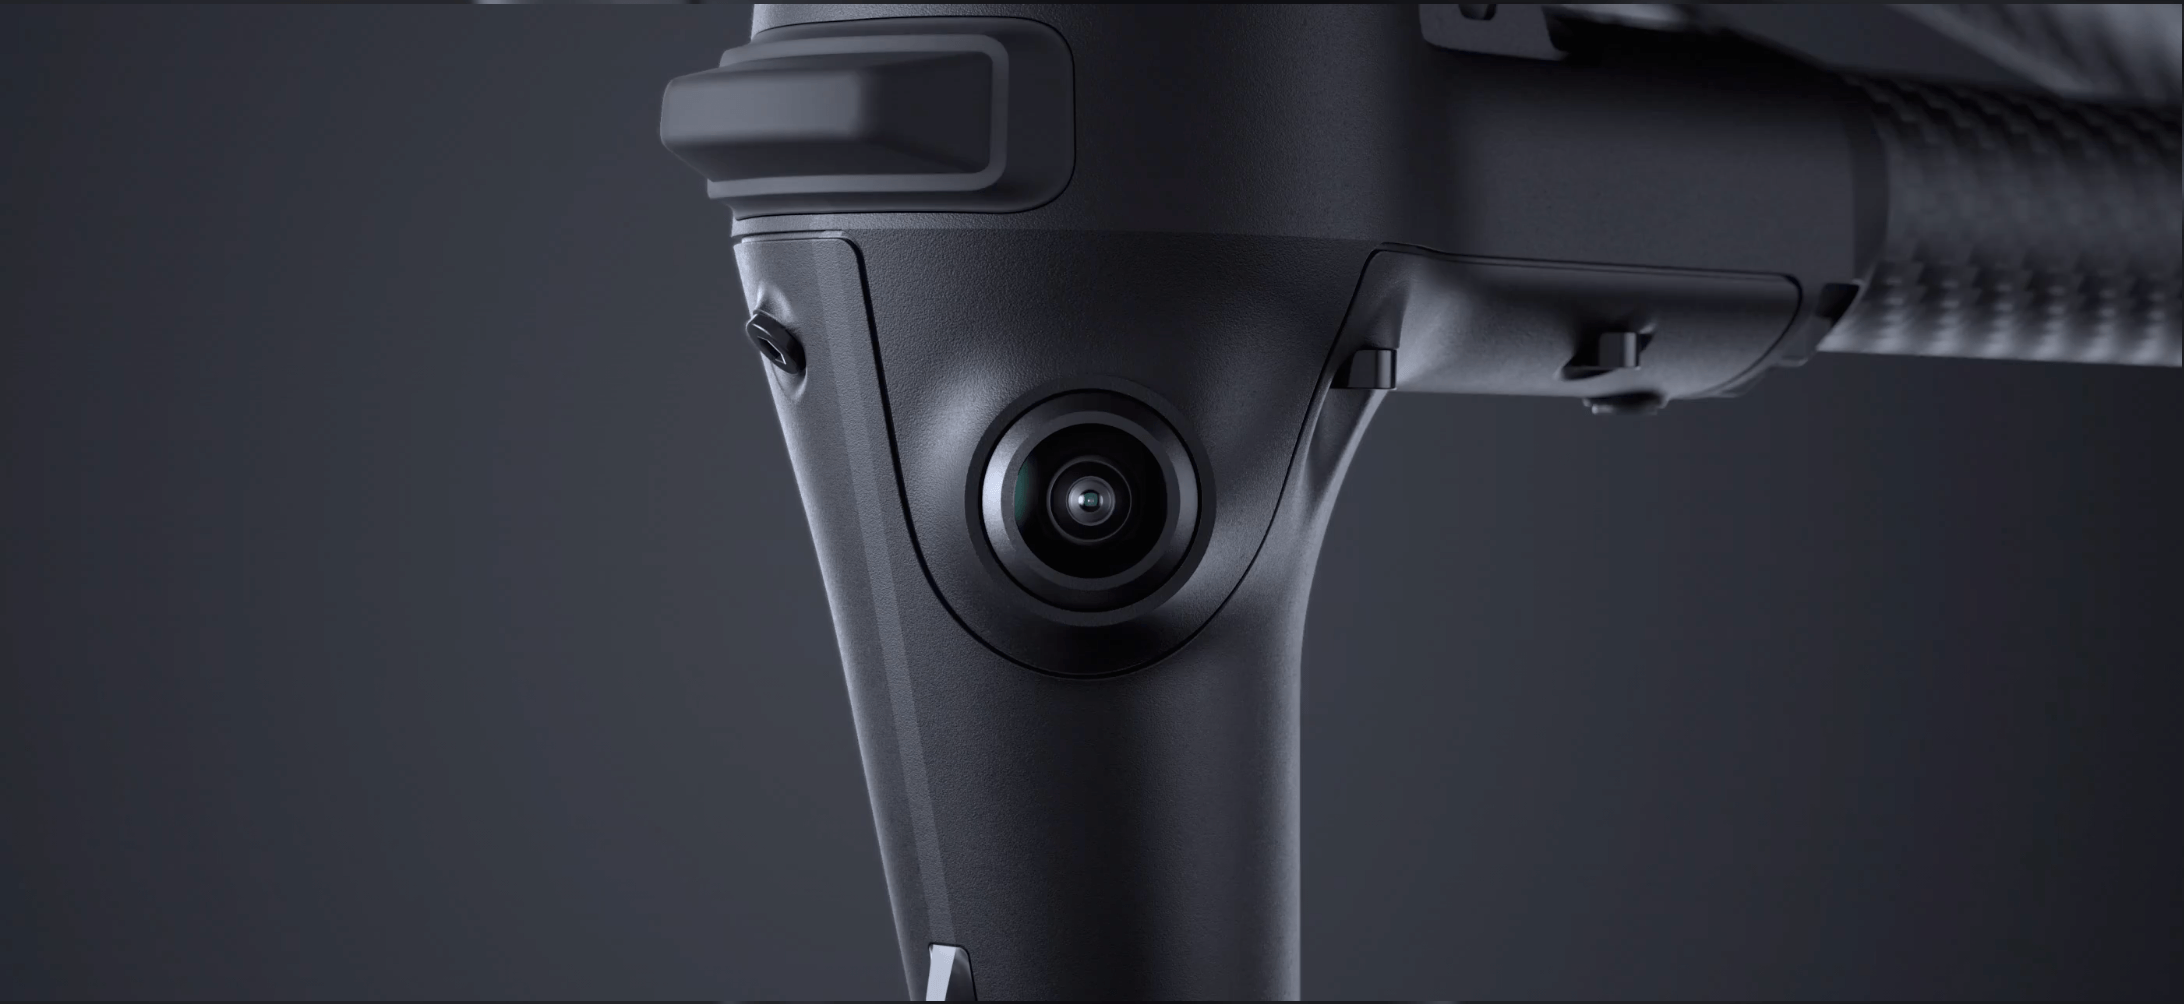 Imagem frontal da câmera do drone